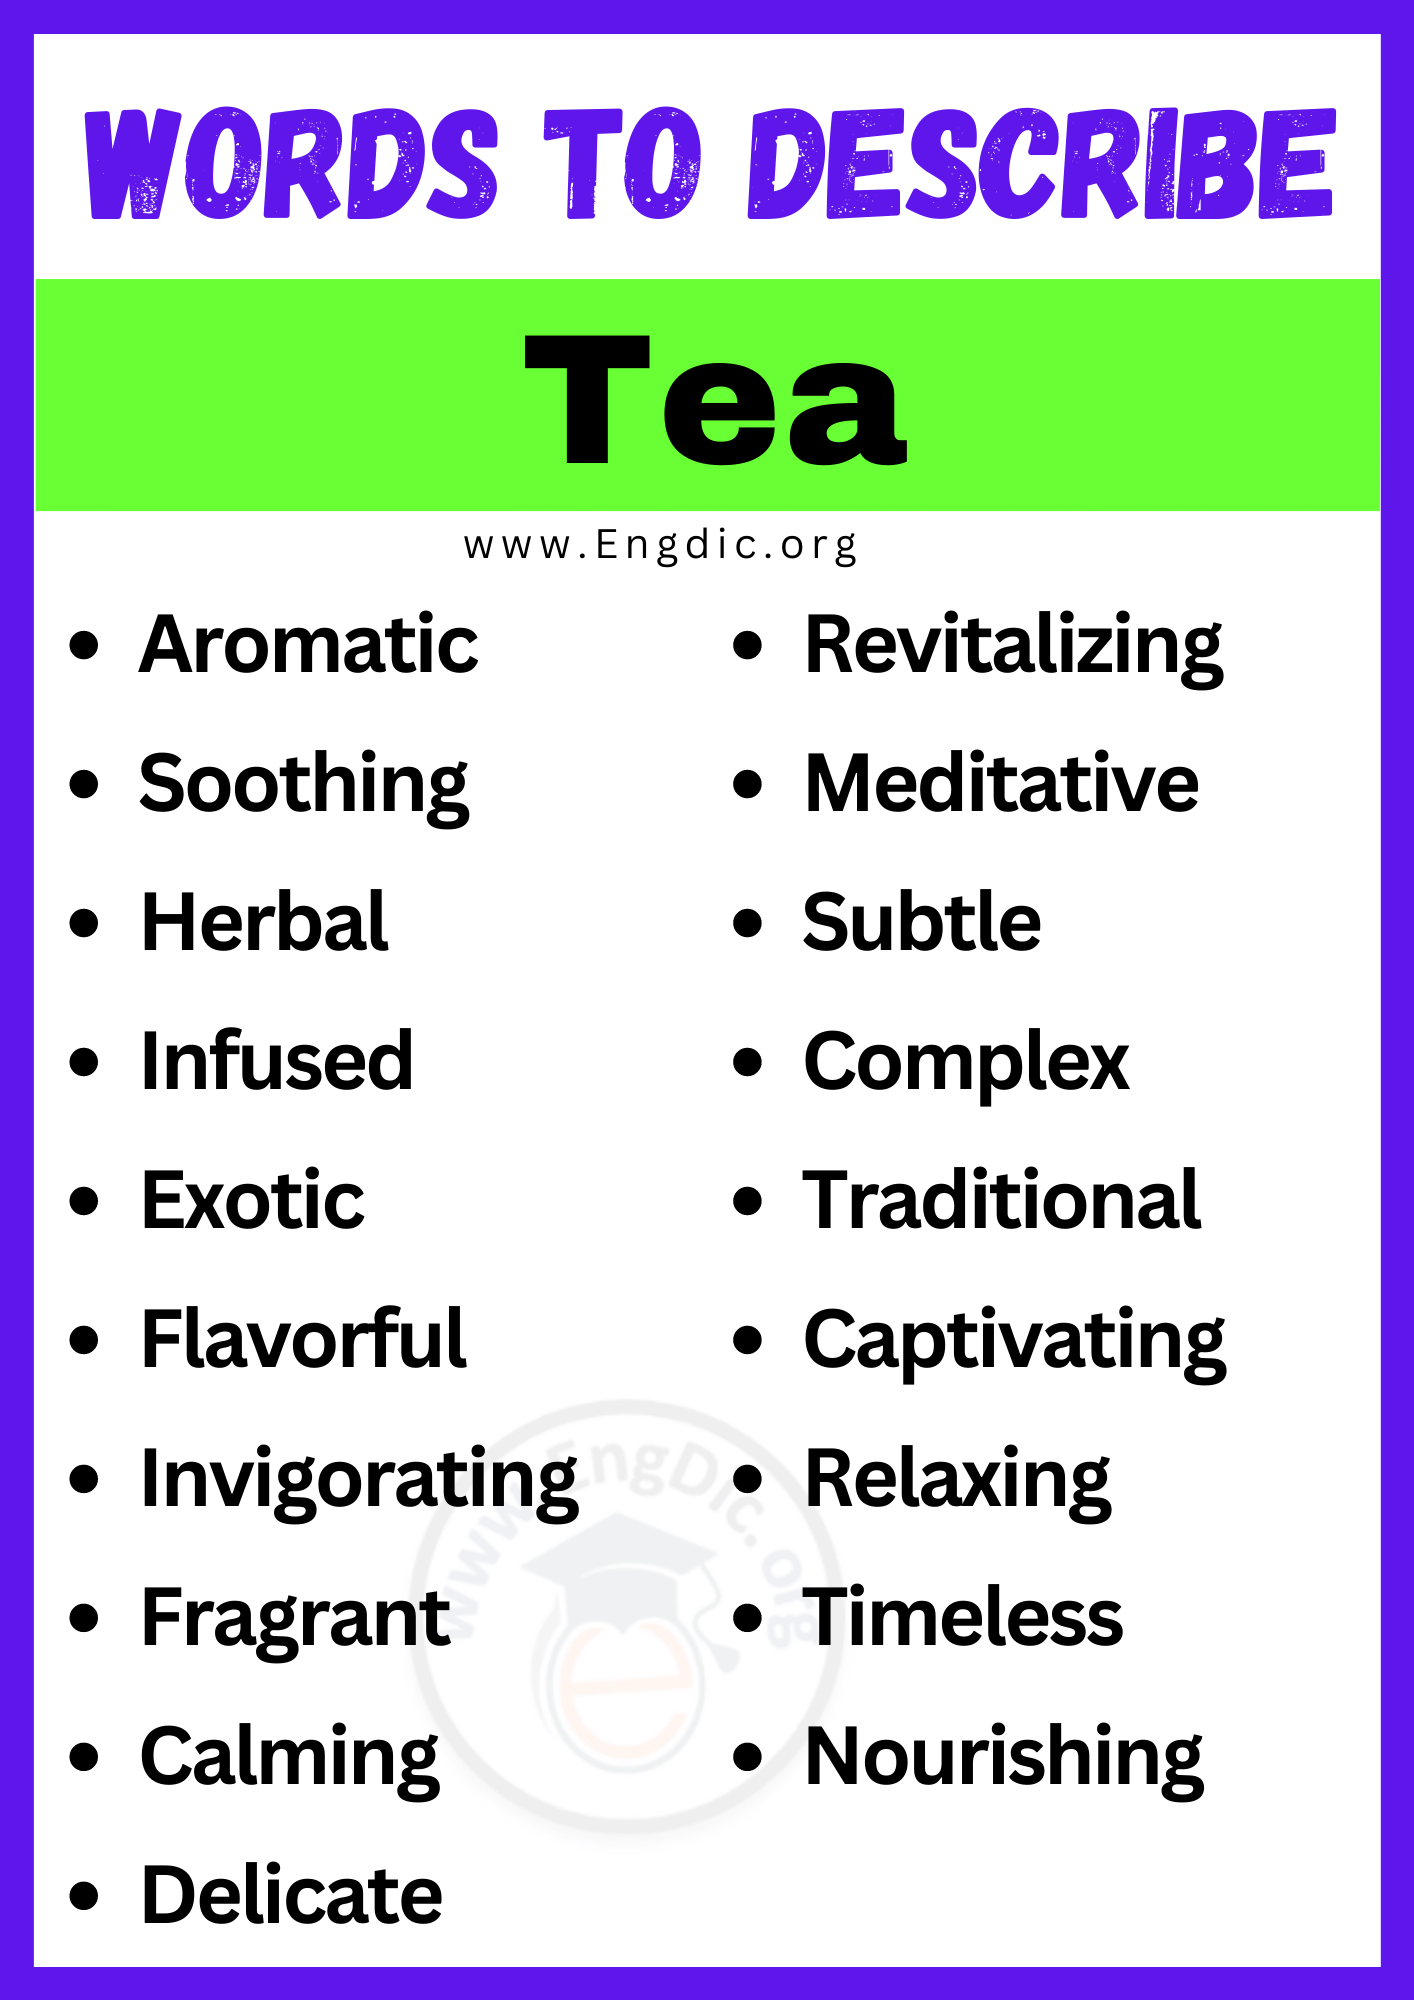 Words to Describe Tea